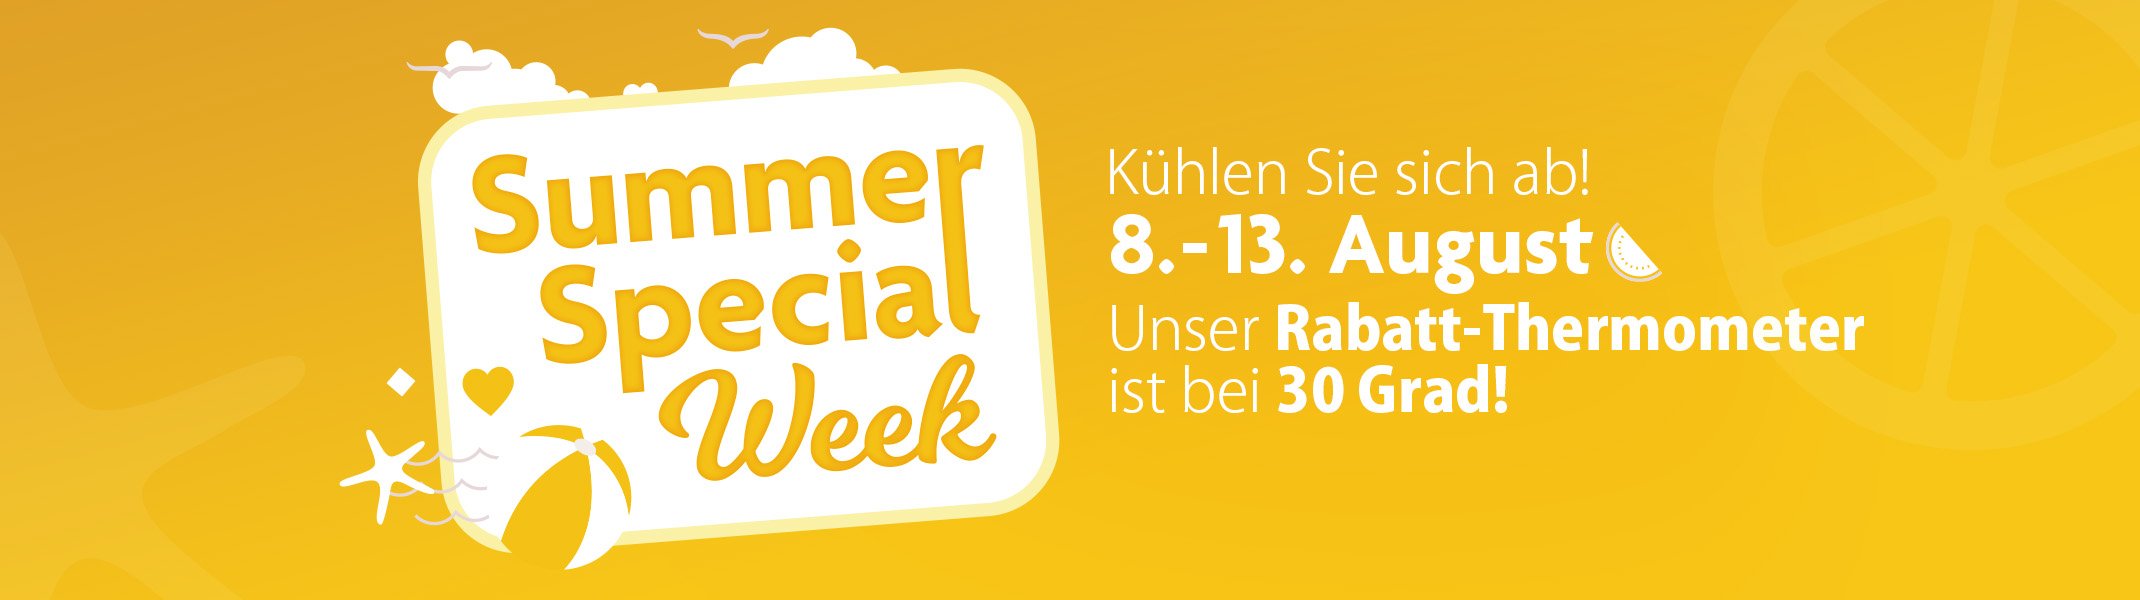 Summer special week 2022 / Homepage banner